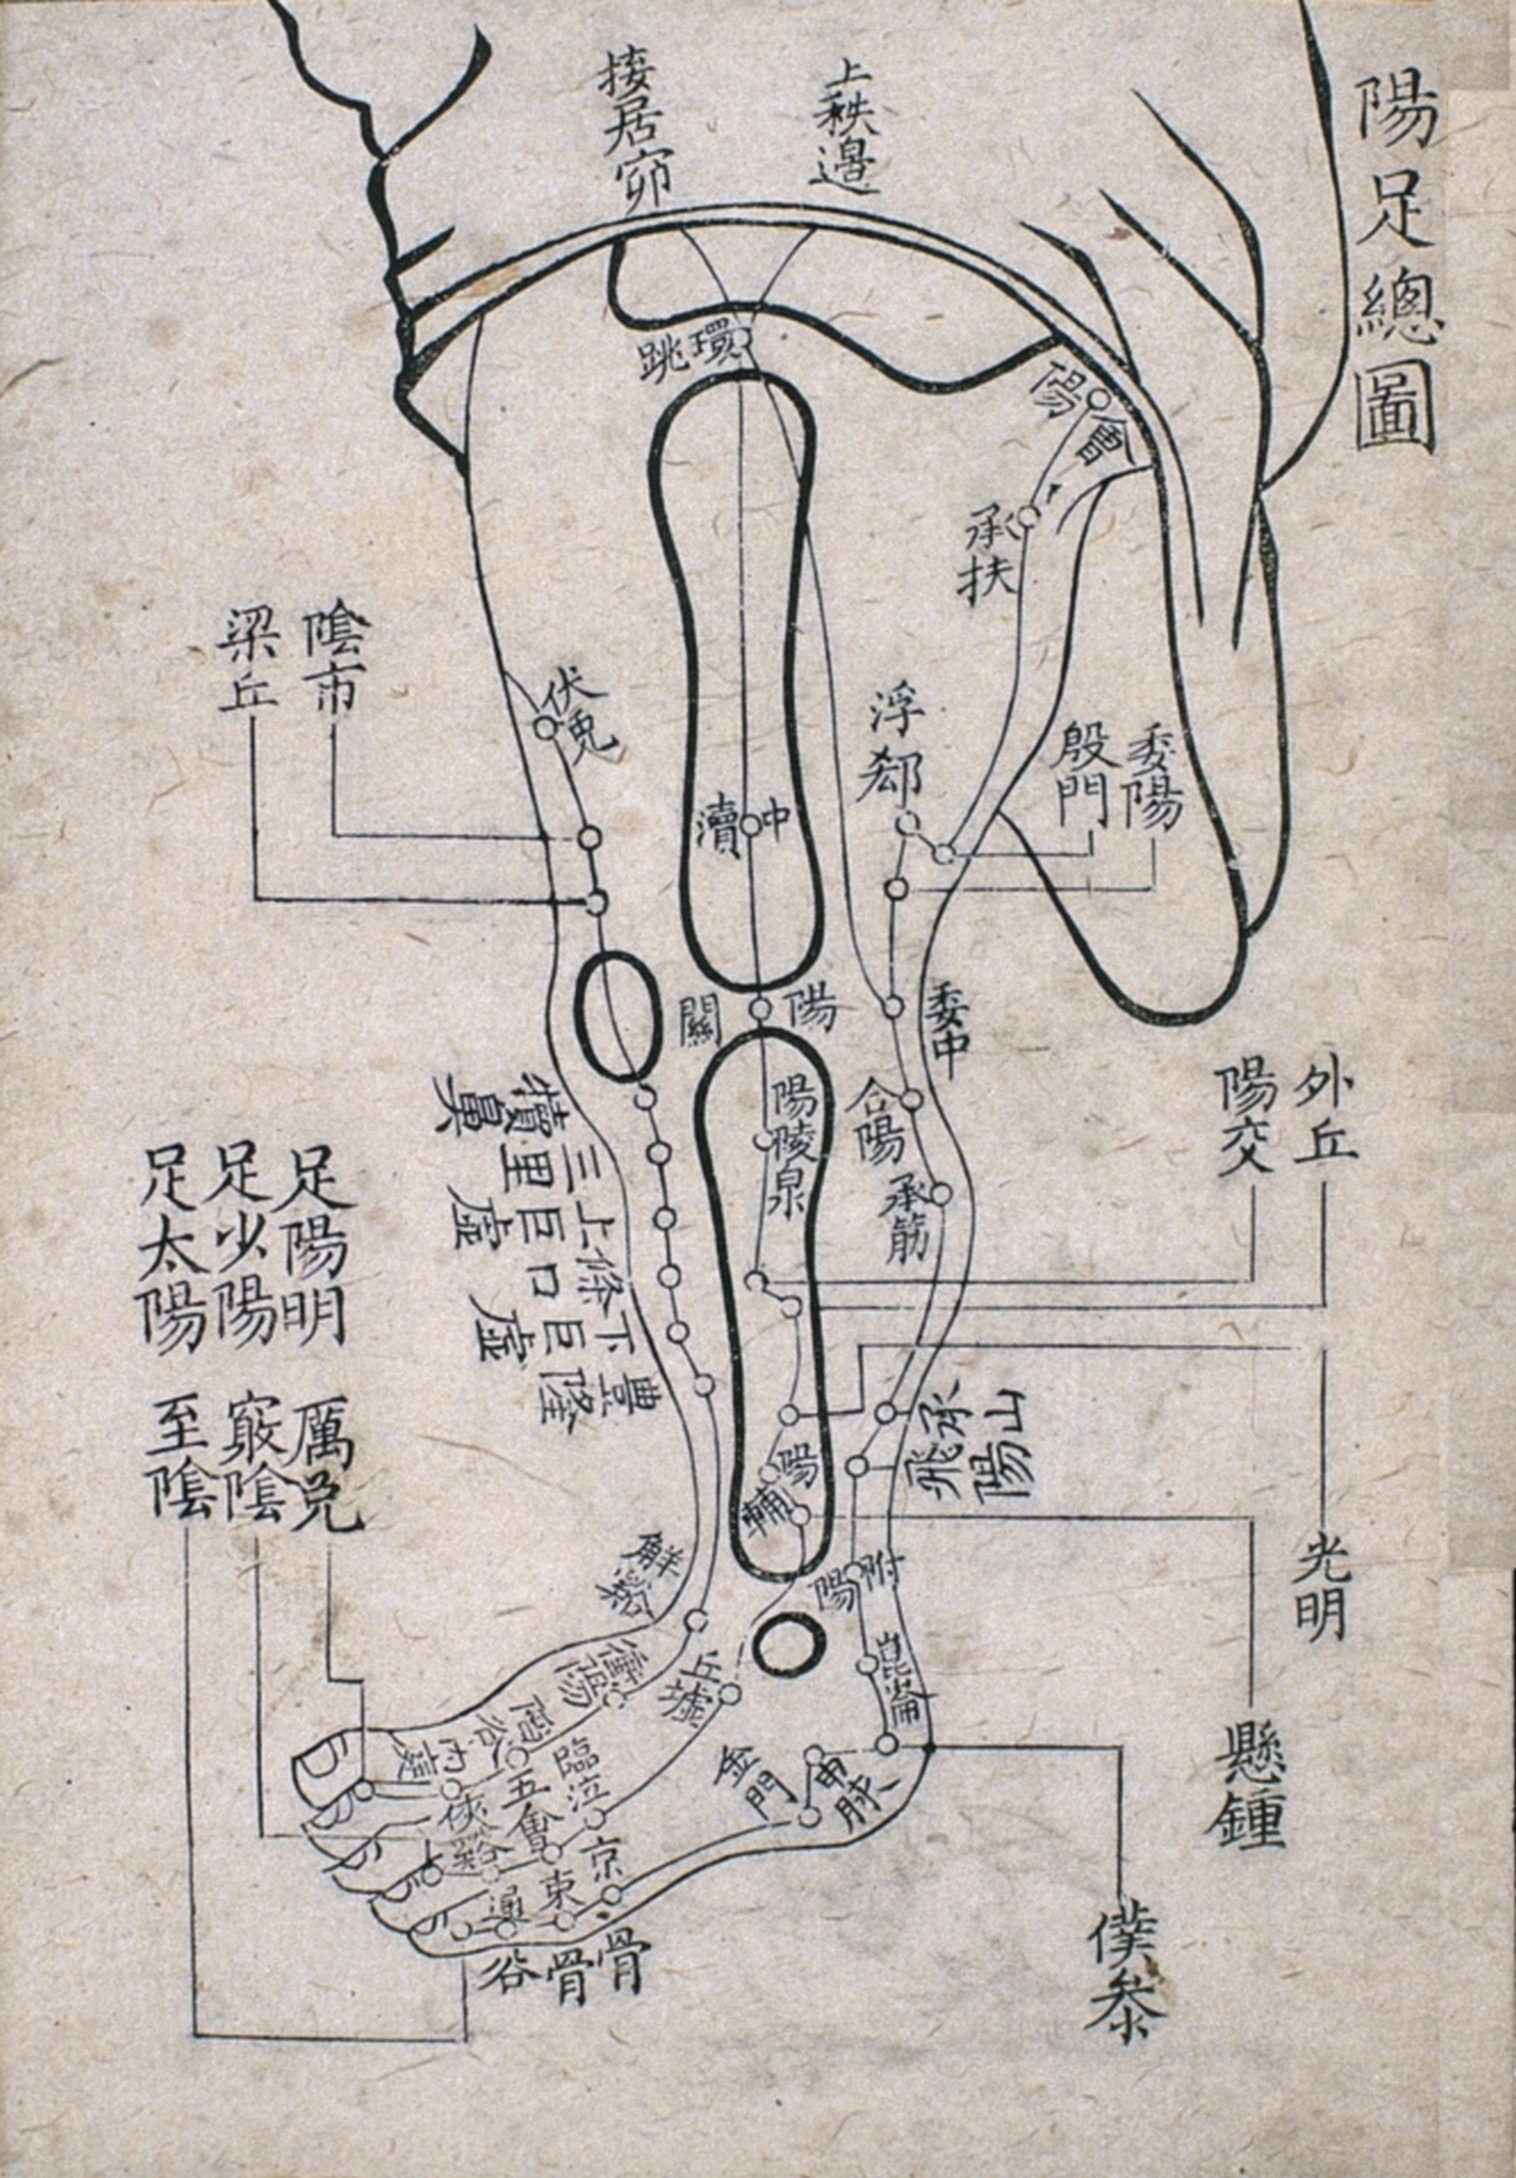 Xylographie d'une édition de 1763 représentant les points des trois méridiens yang du pied.